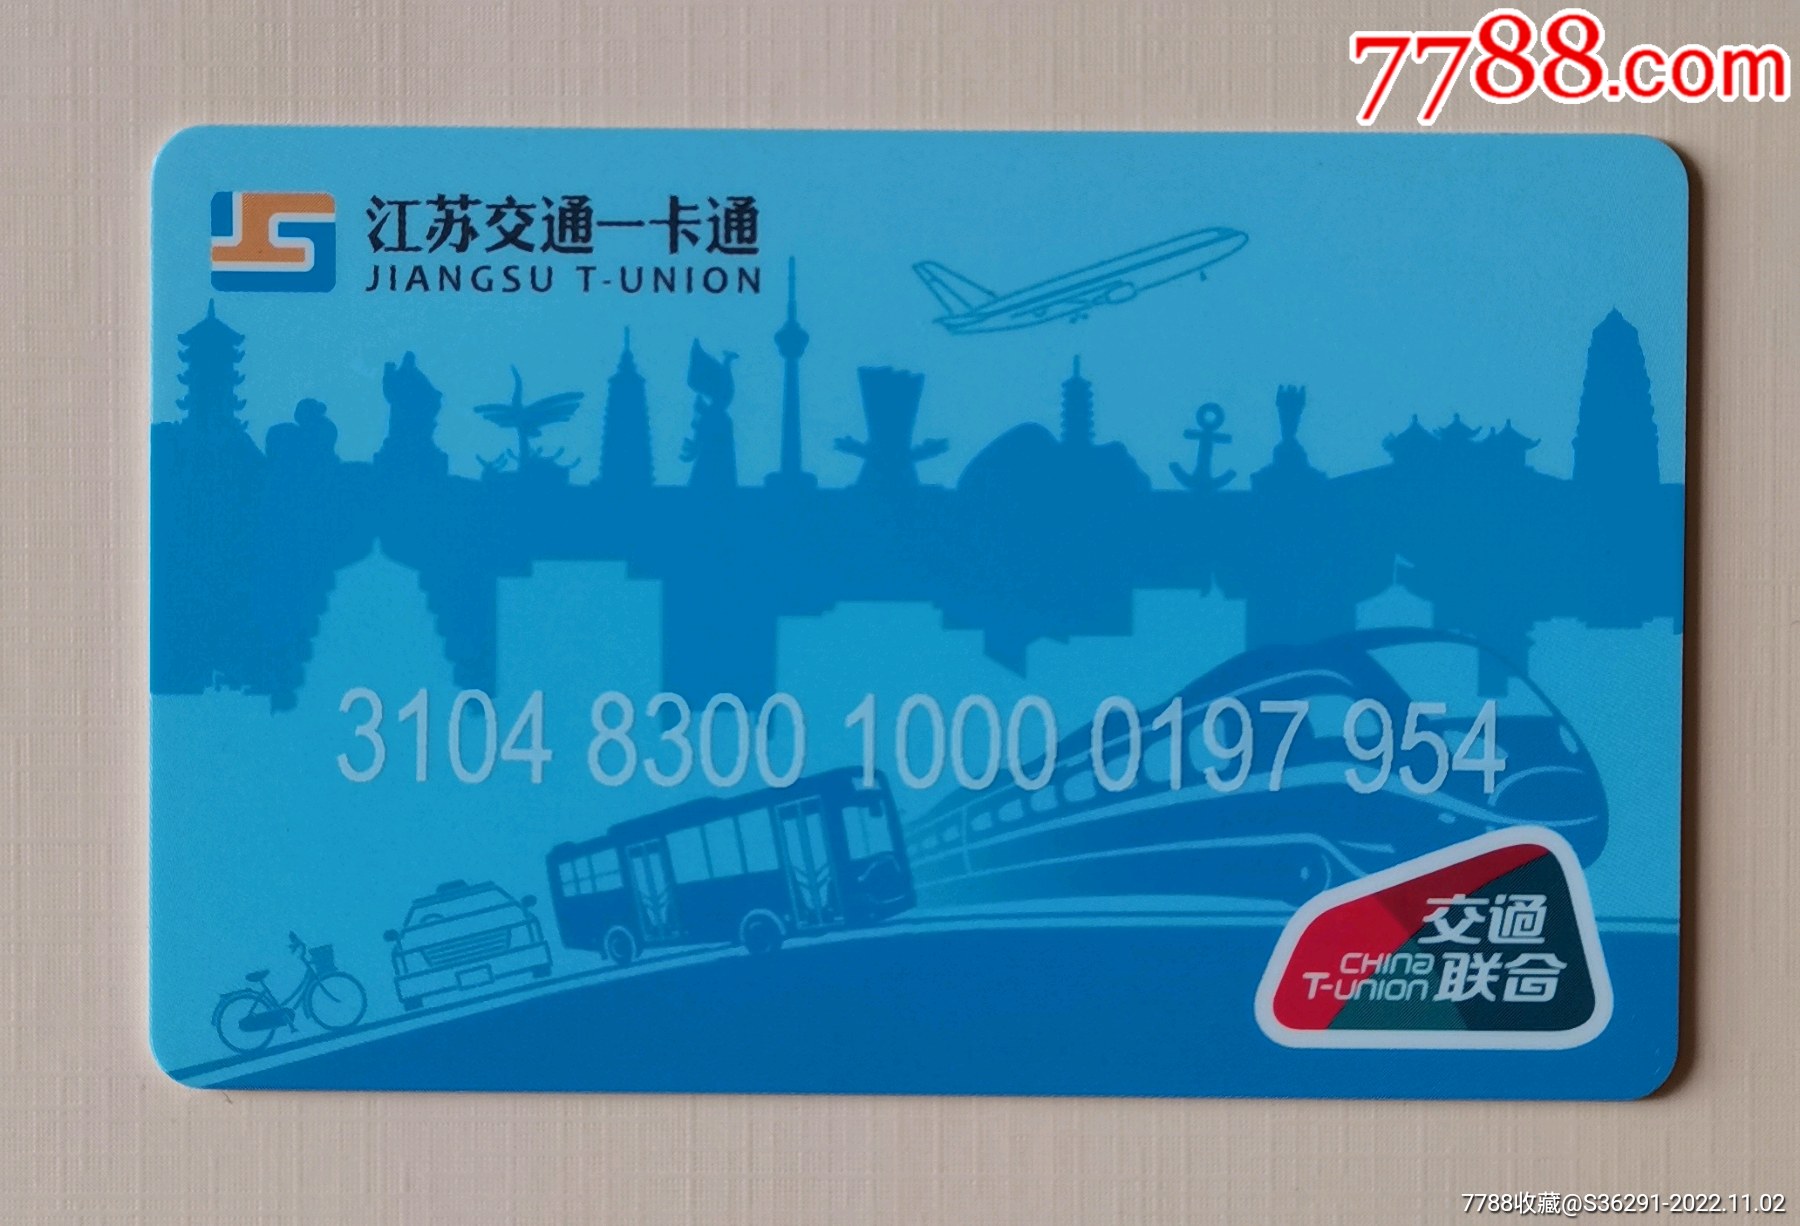 【盘点】南京公交卡变迁的满满回忆杀_月票